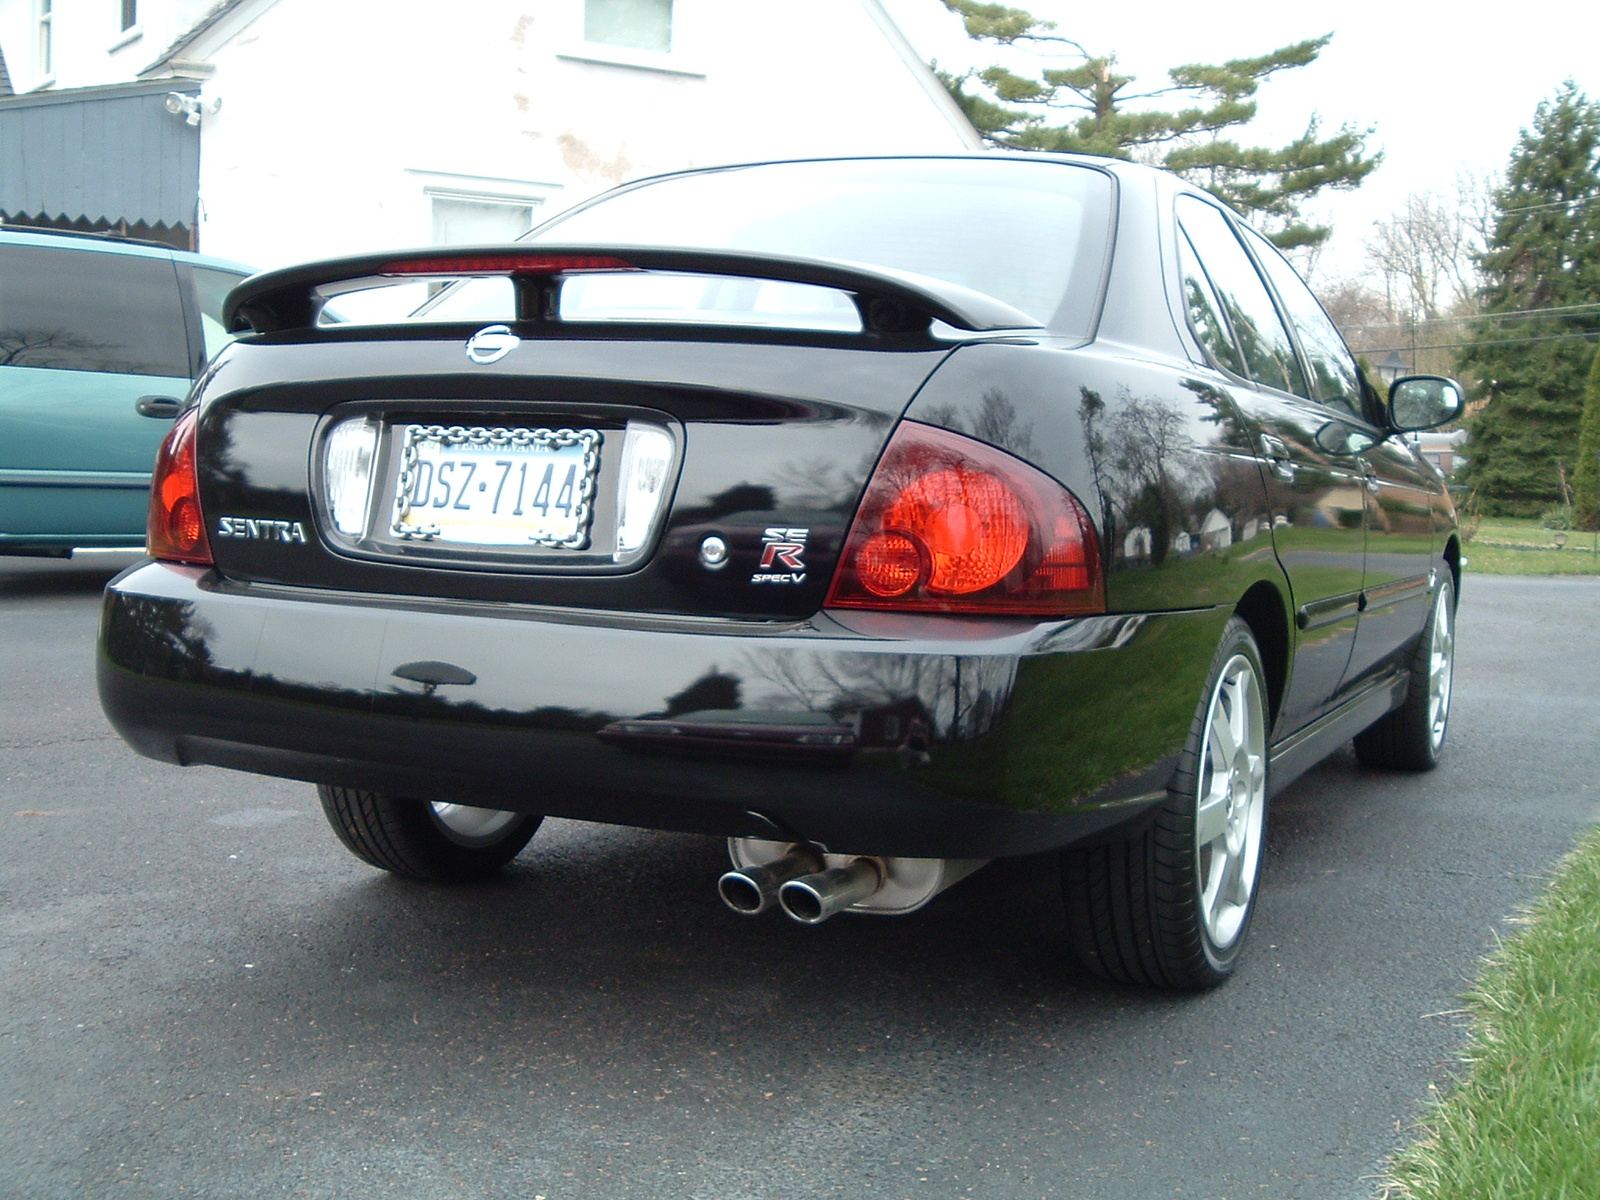 2004 Nissan sentra spec v upgrades #6